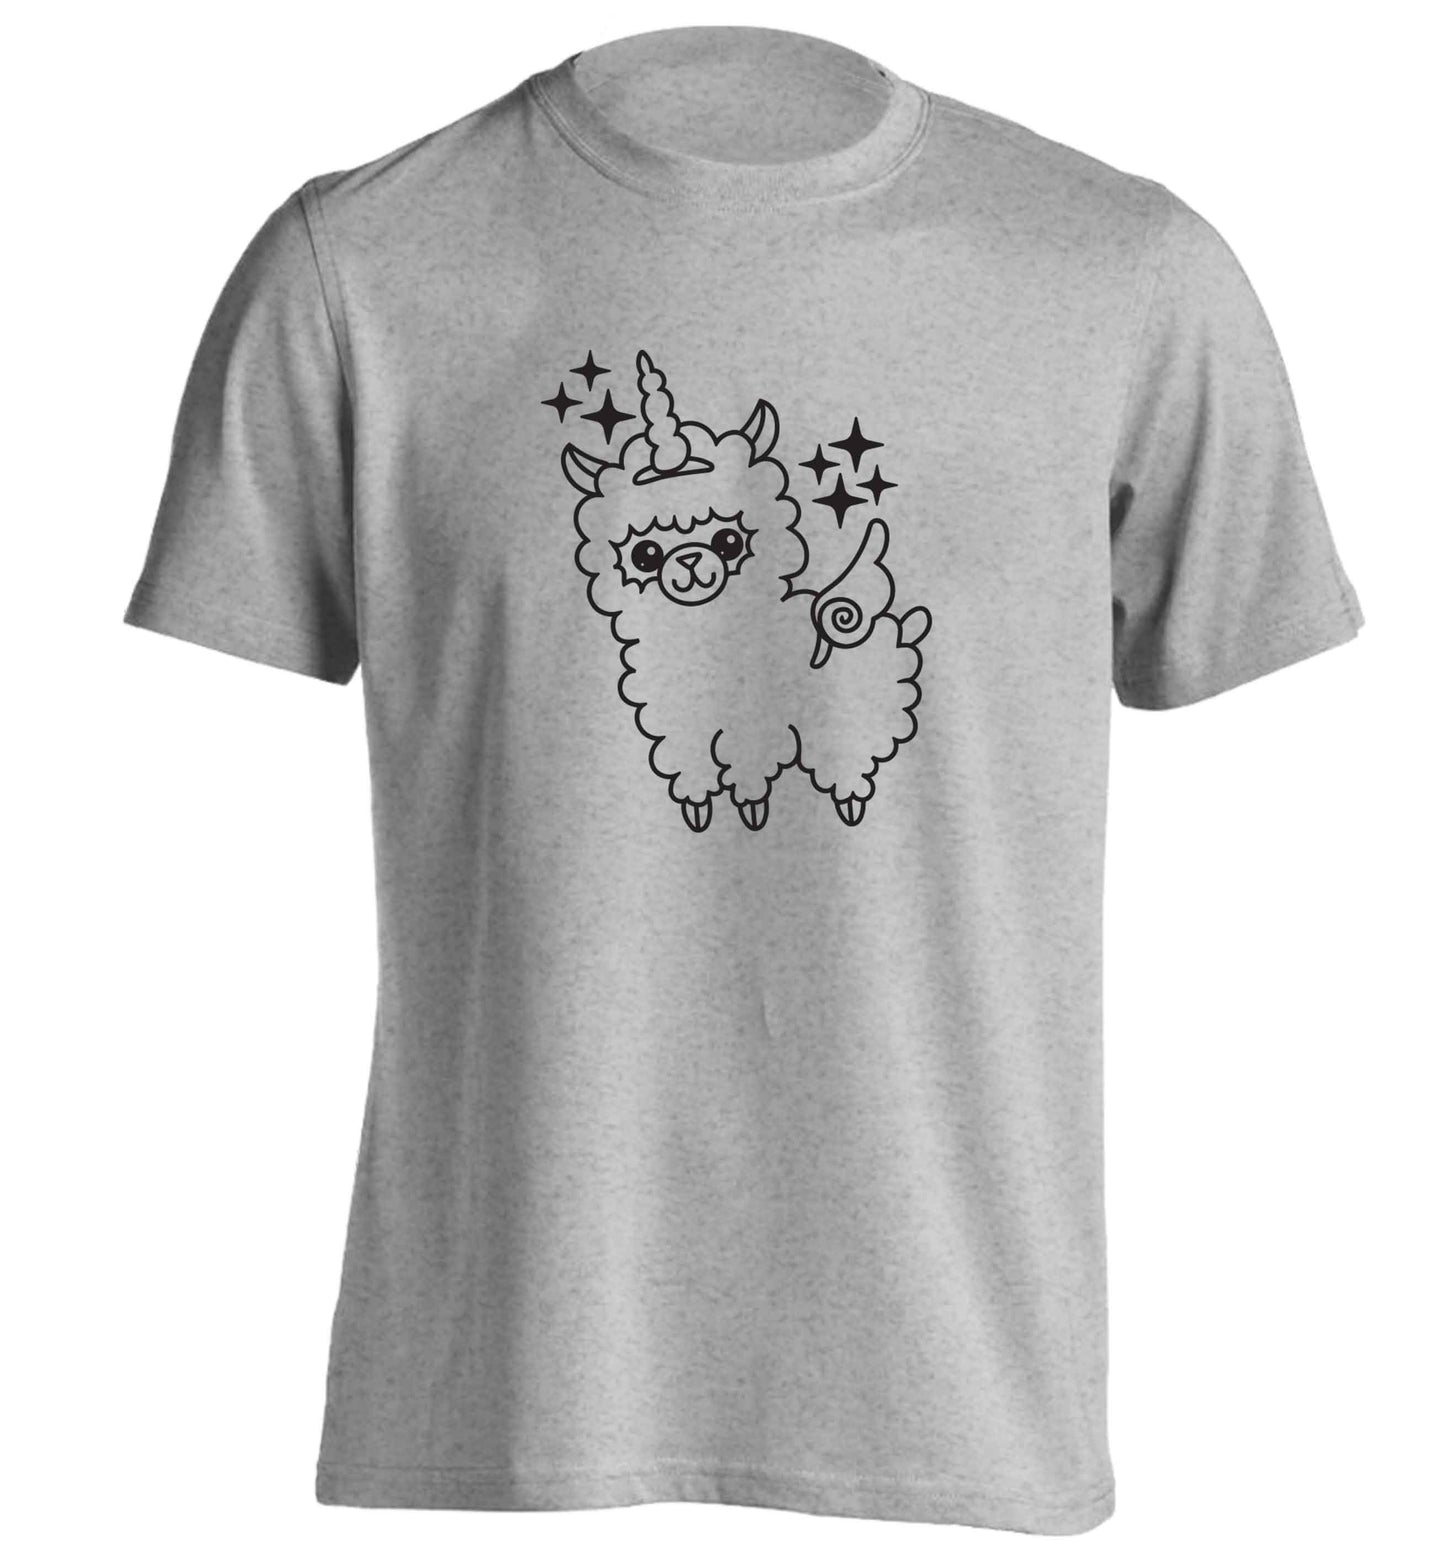 Llamacorn llama unicorn adults unisex grey Tshirt 2XL